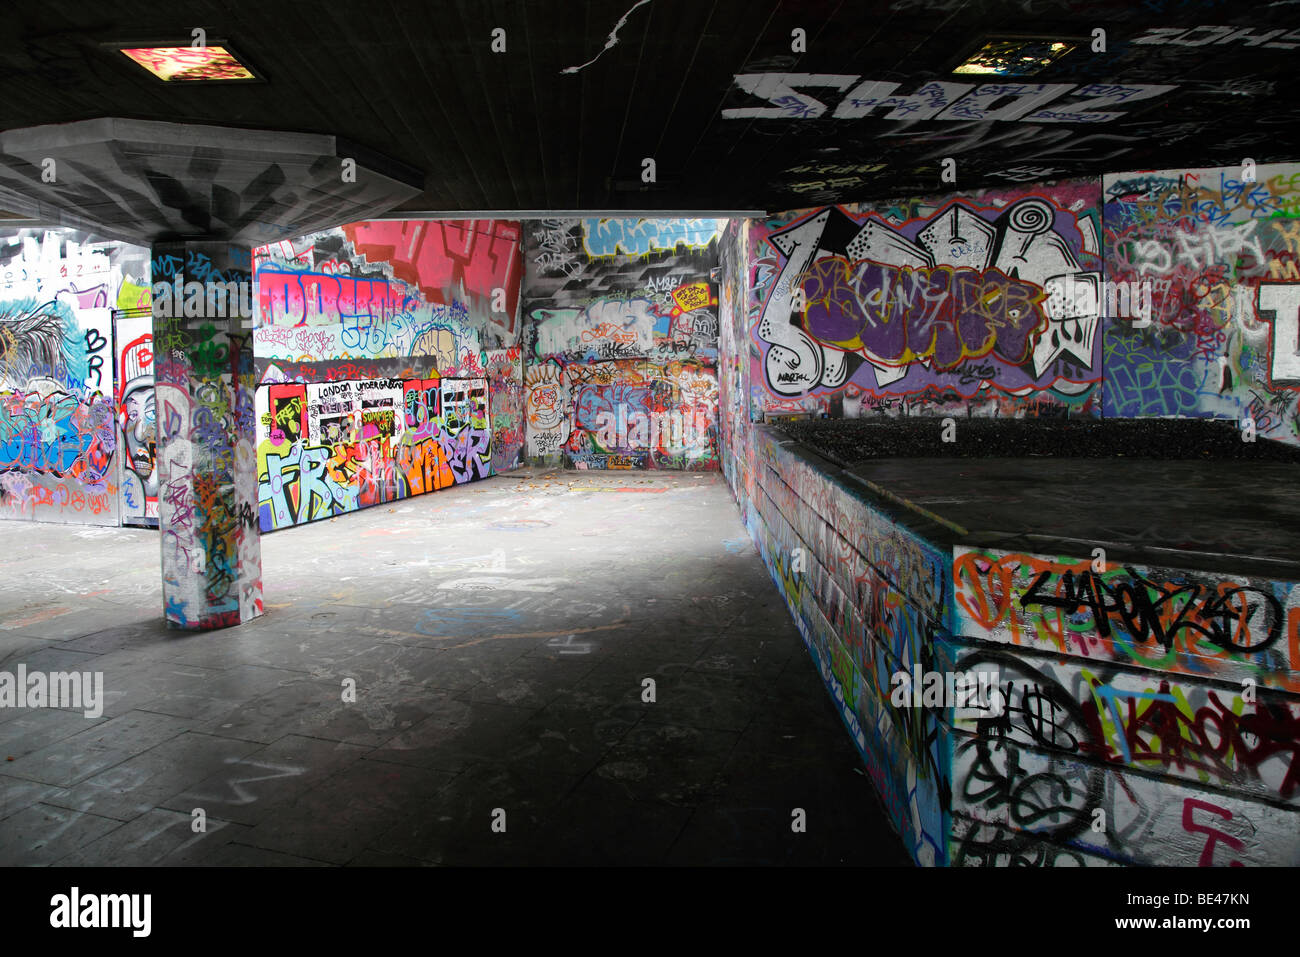 Graffiti-land, South Bank London Stock Photo